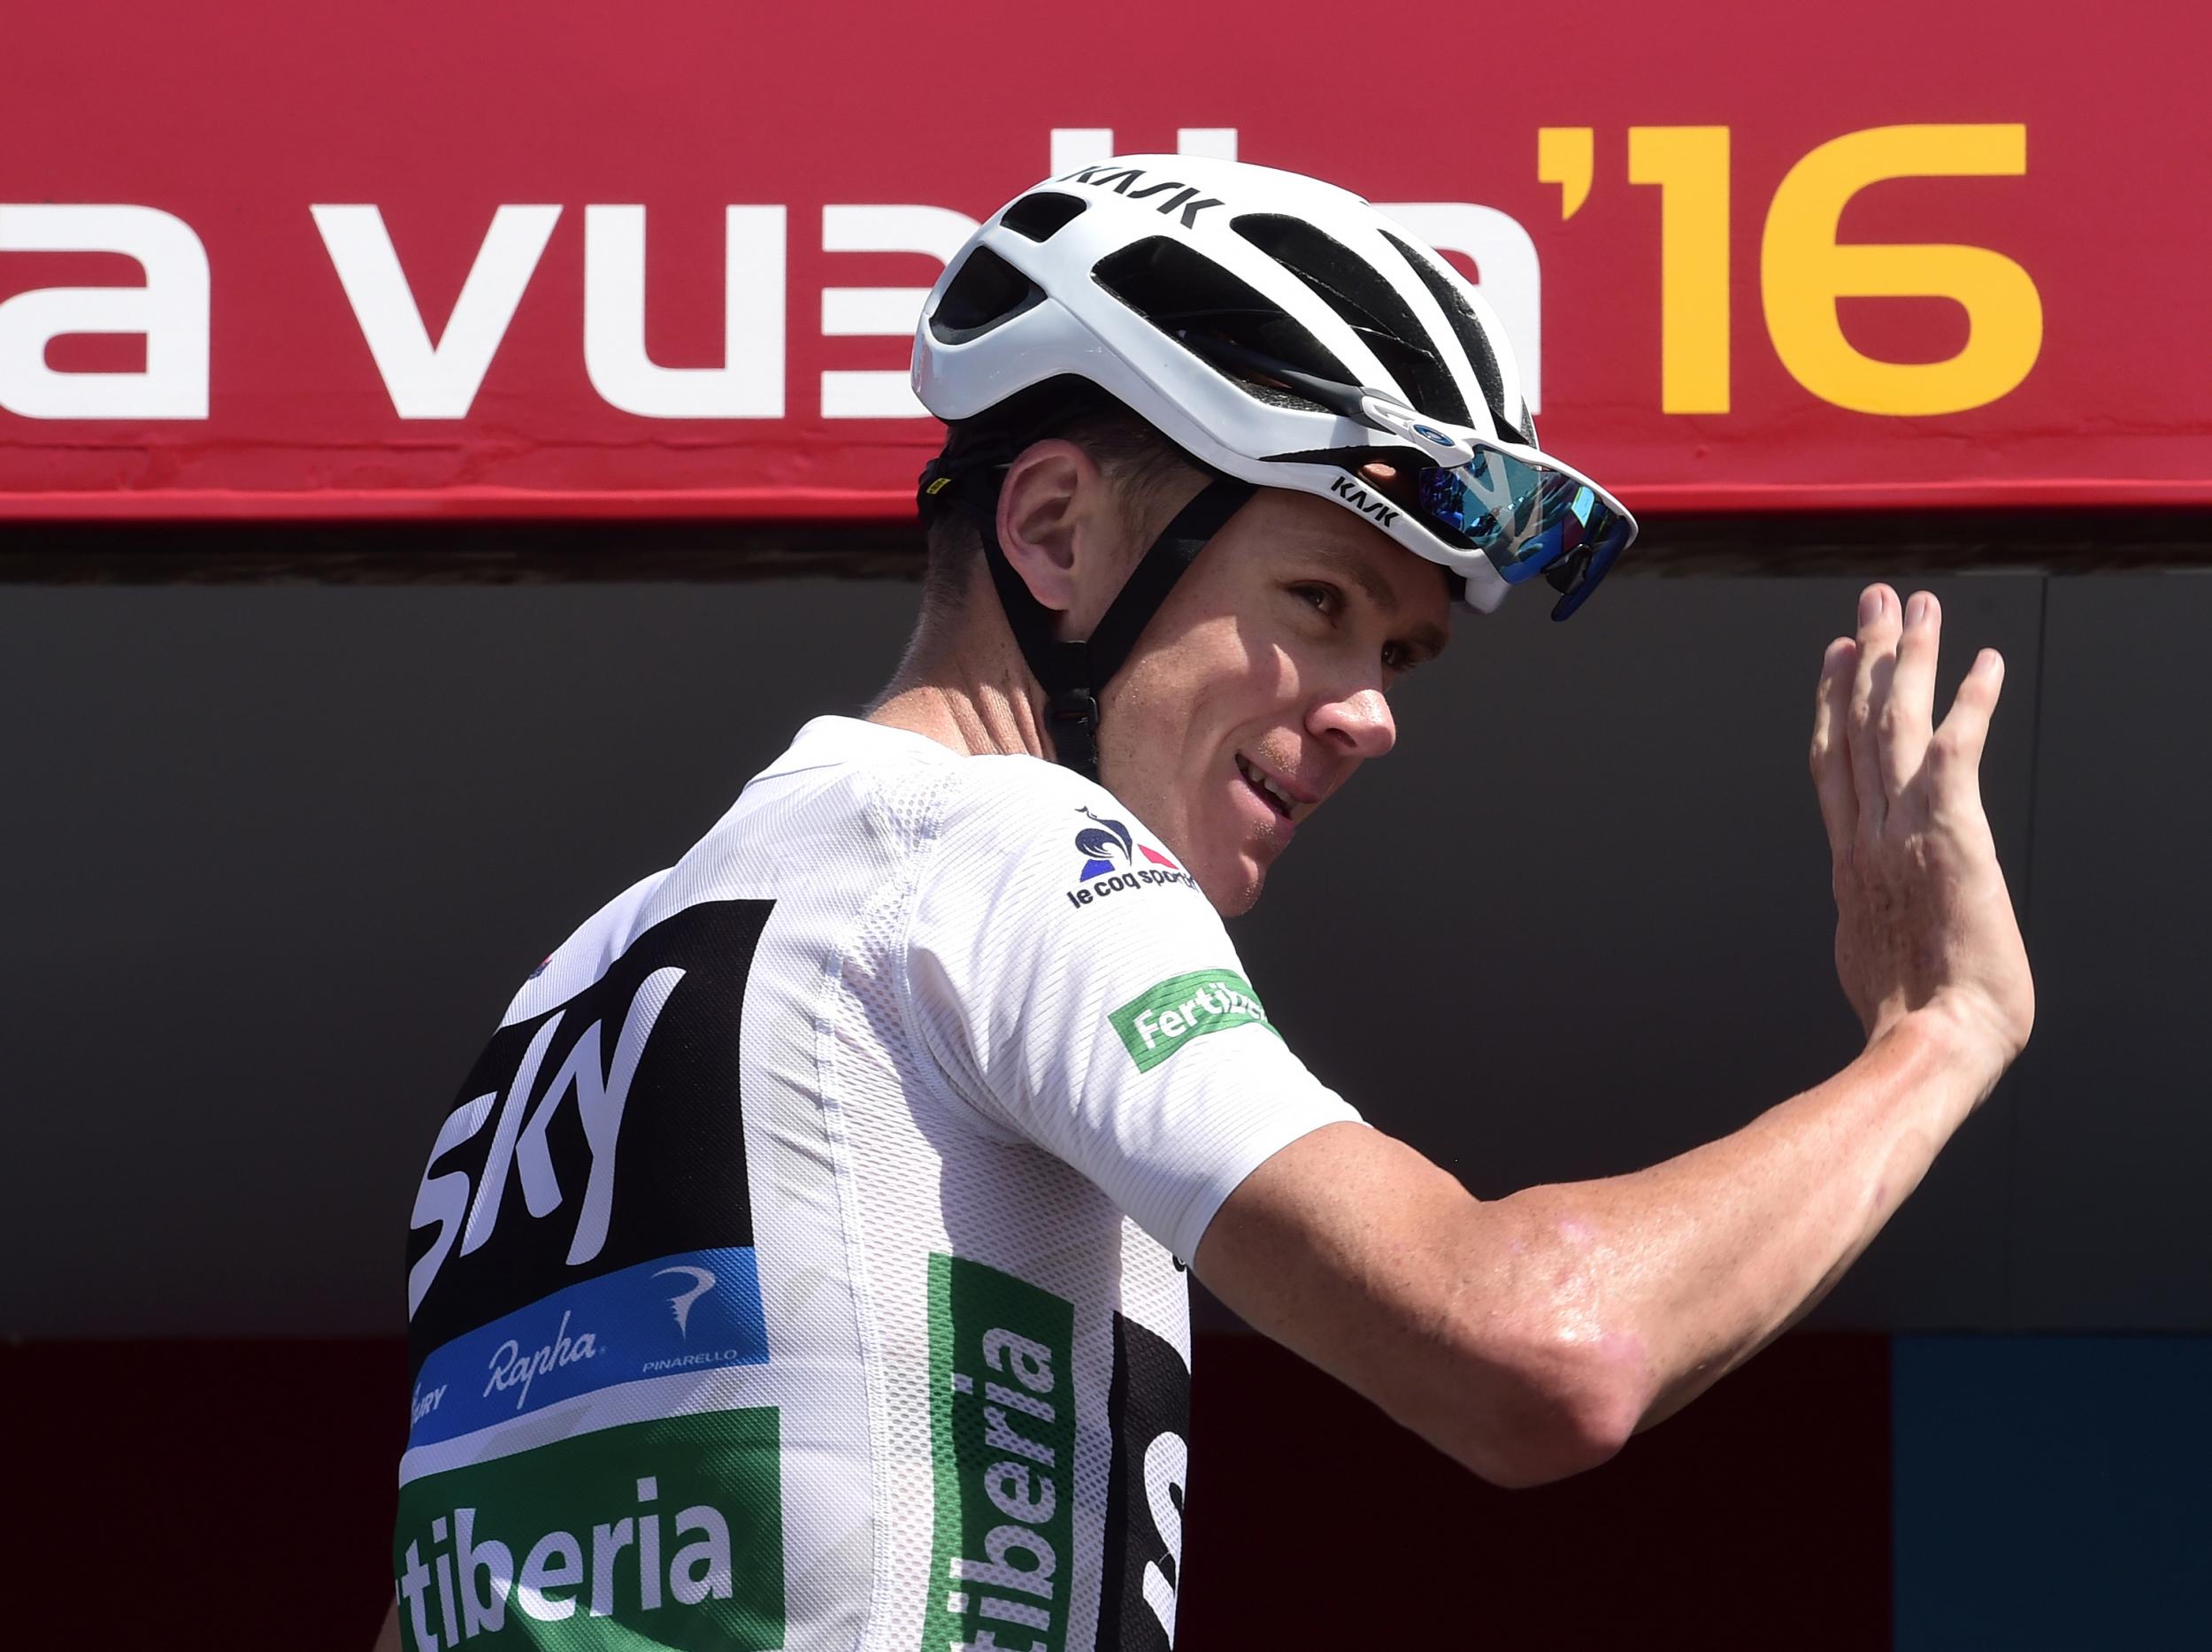 Froome has never won the Vuelta a España